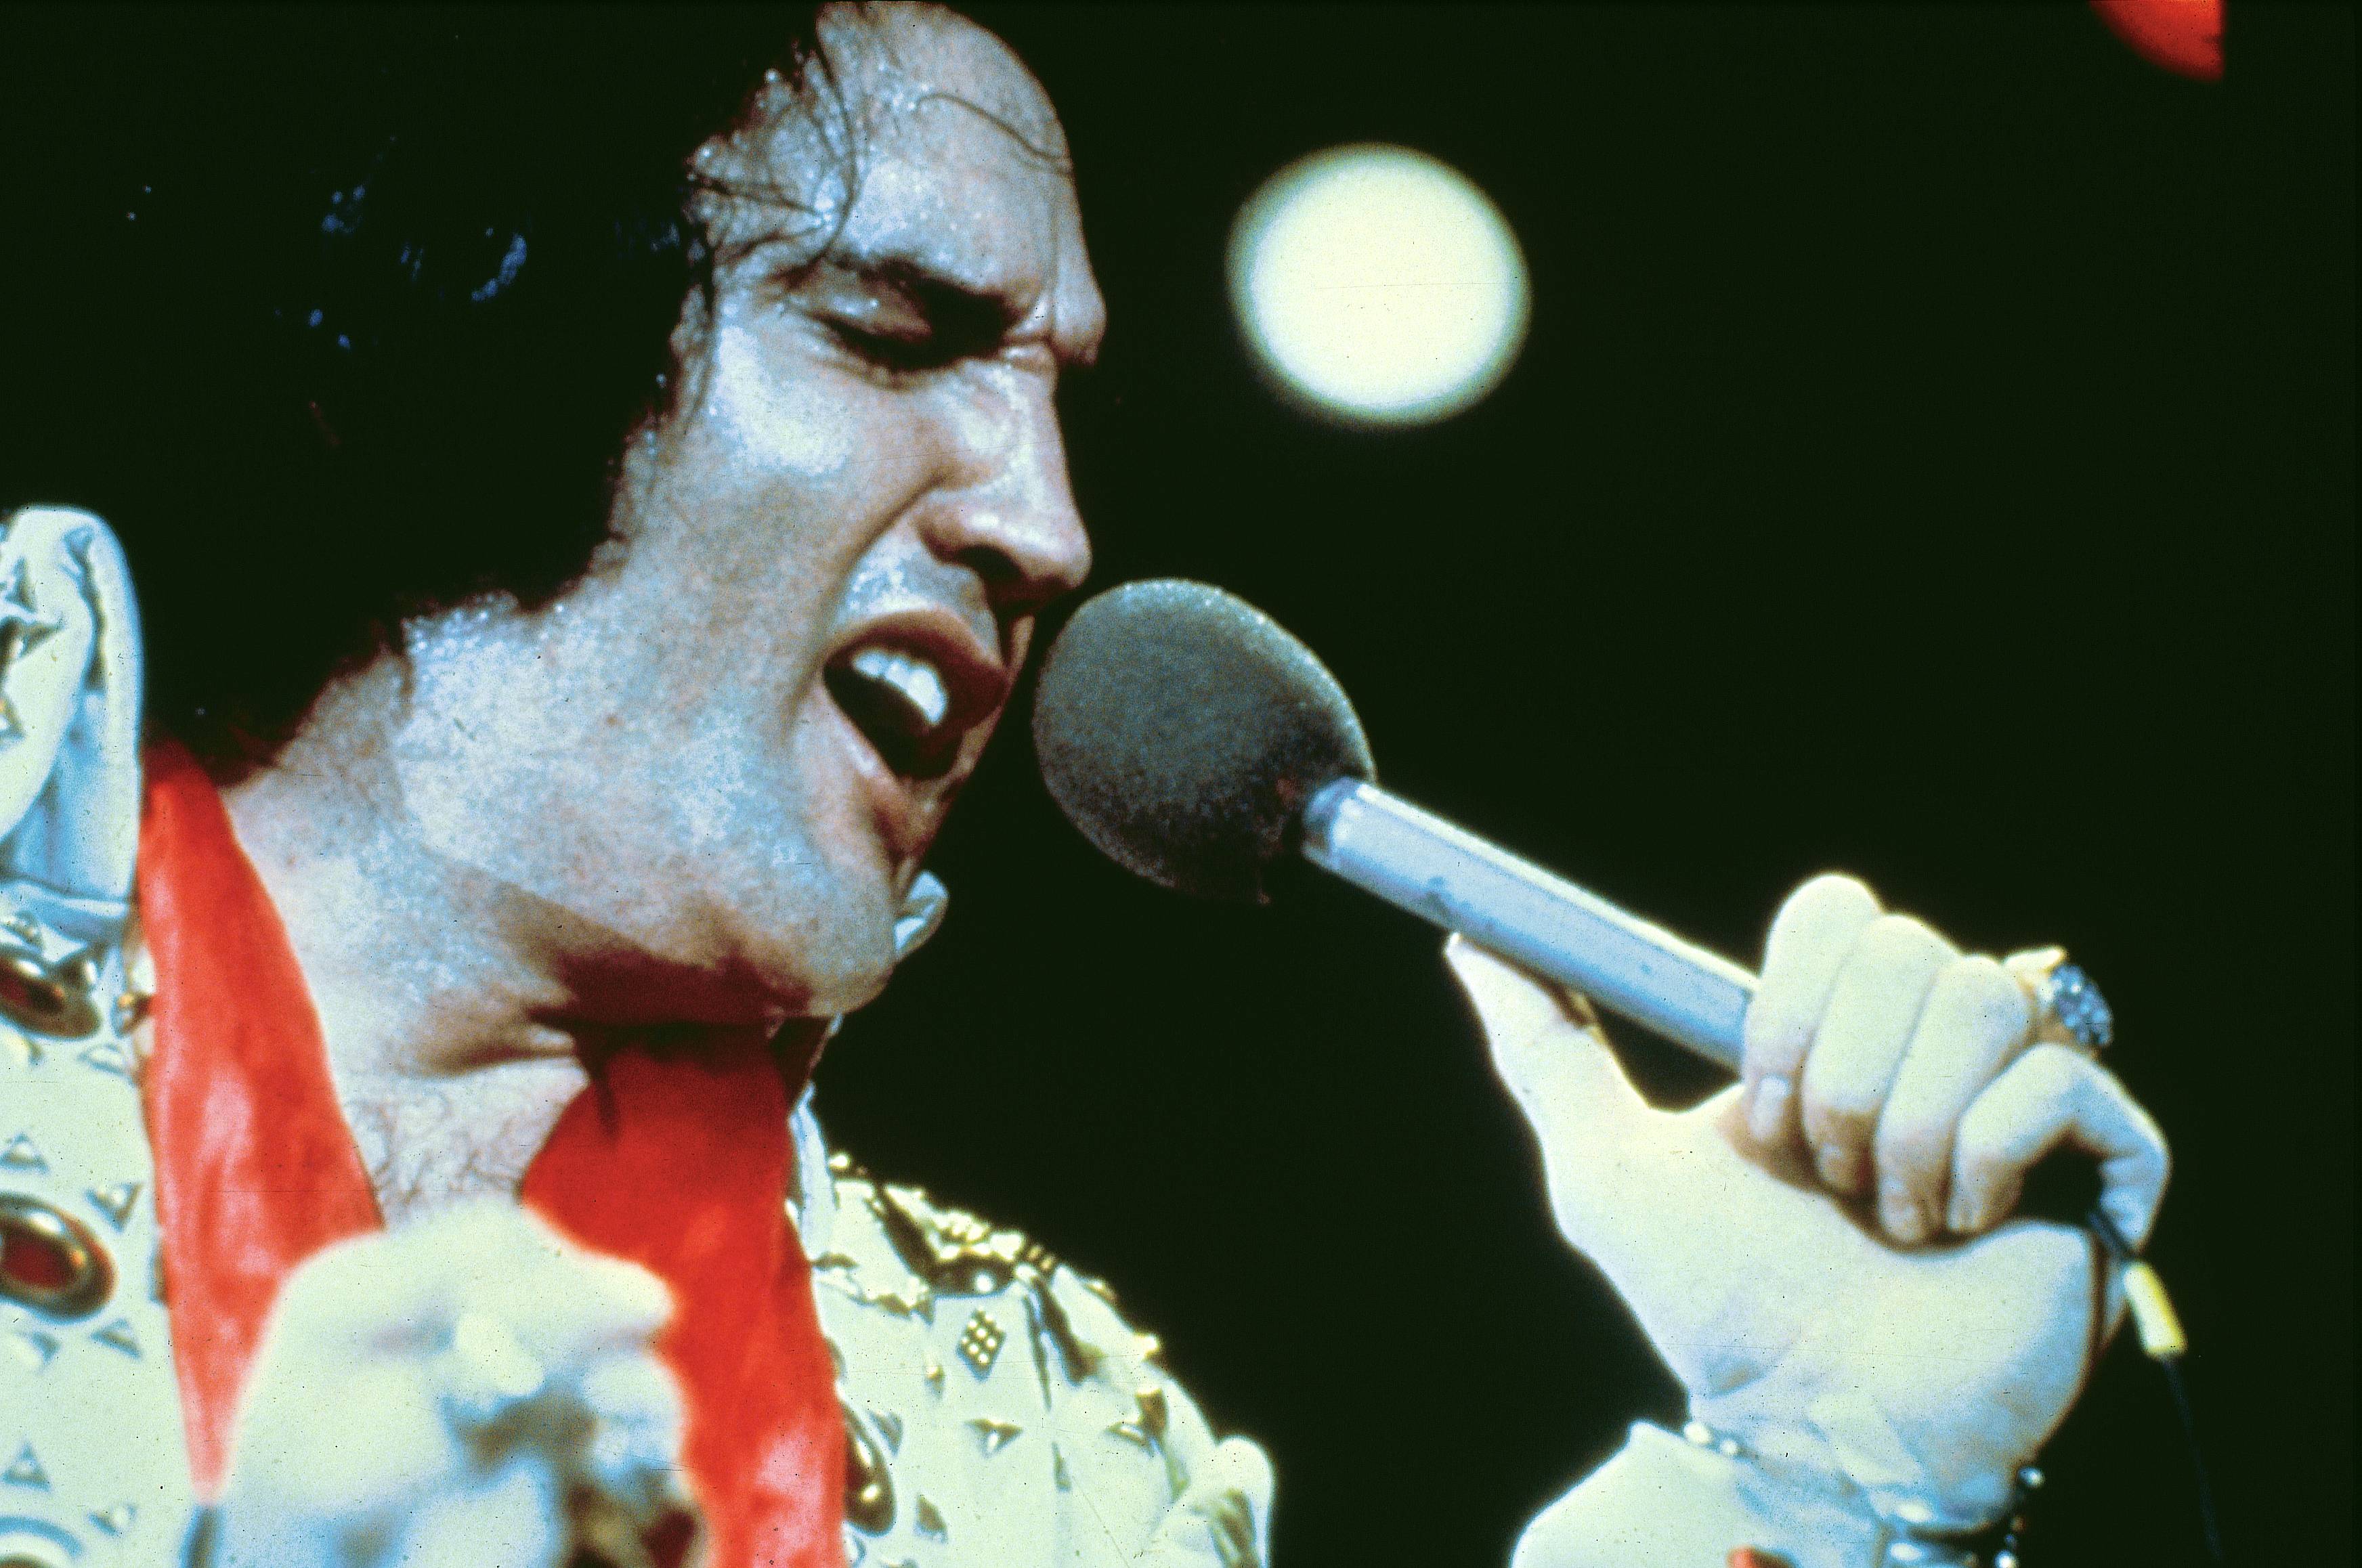 Elvis PRESLEY, performing live onstage c.1973